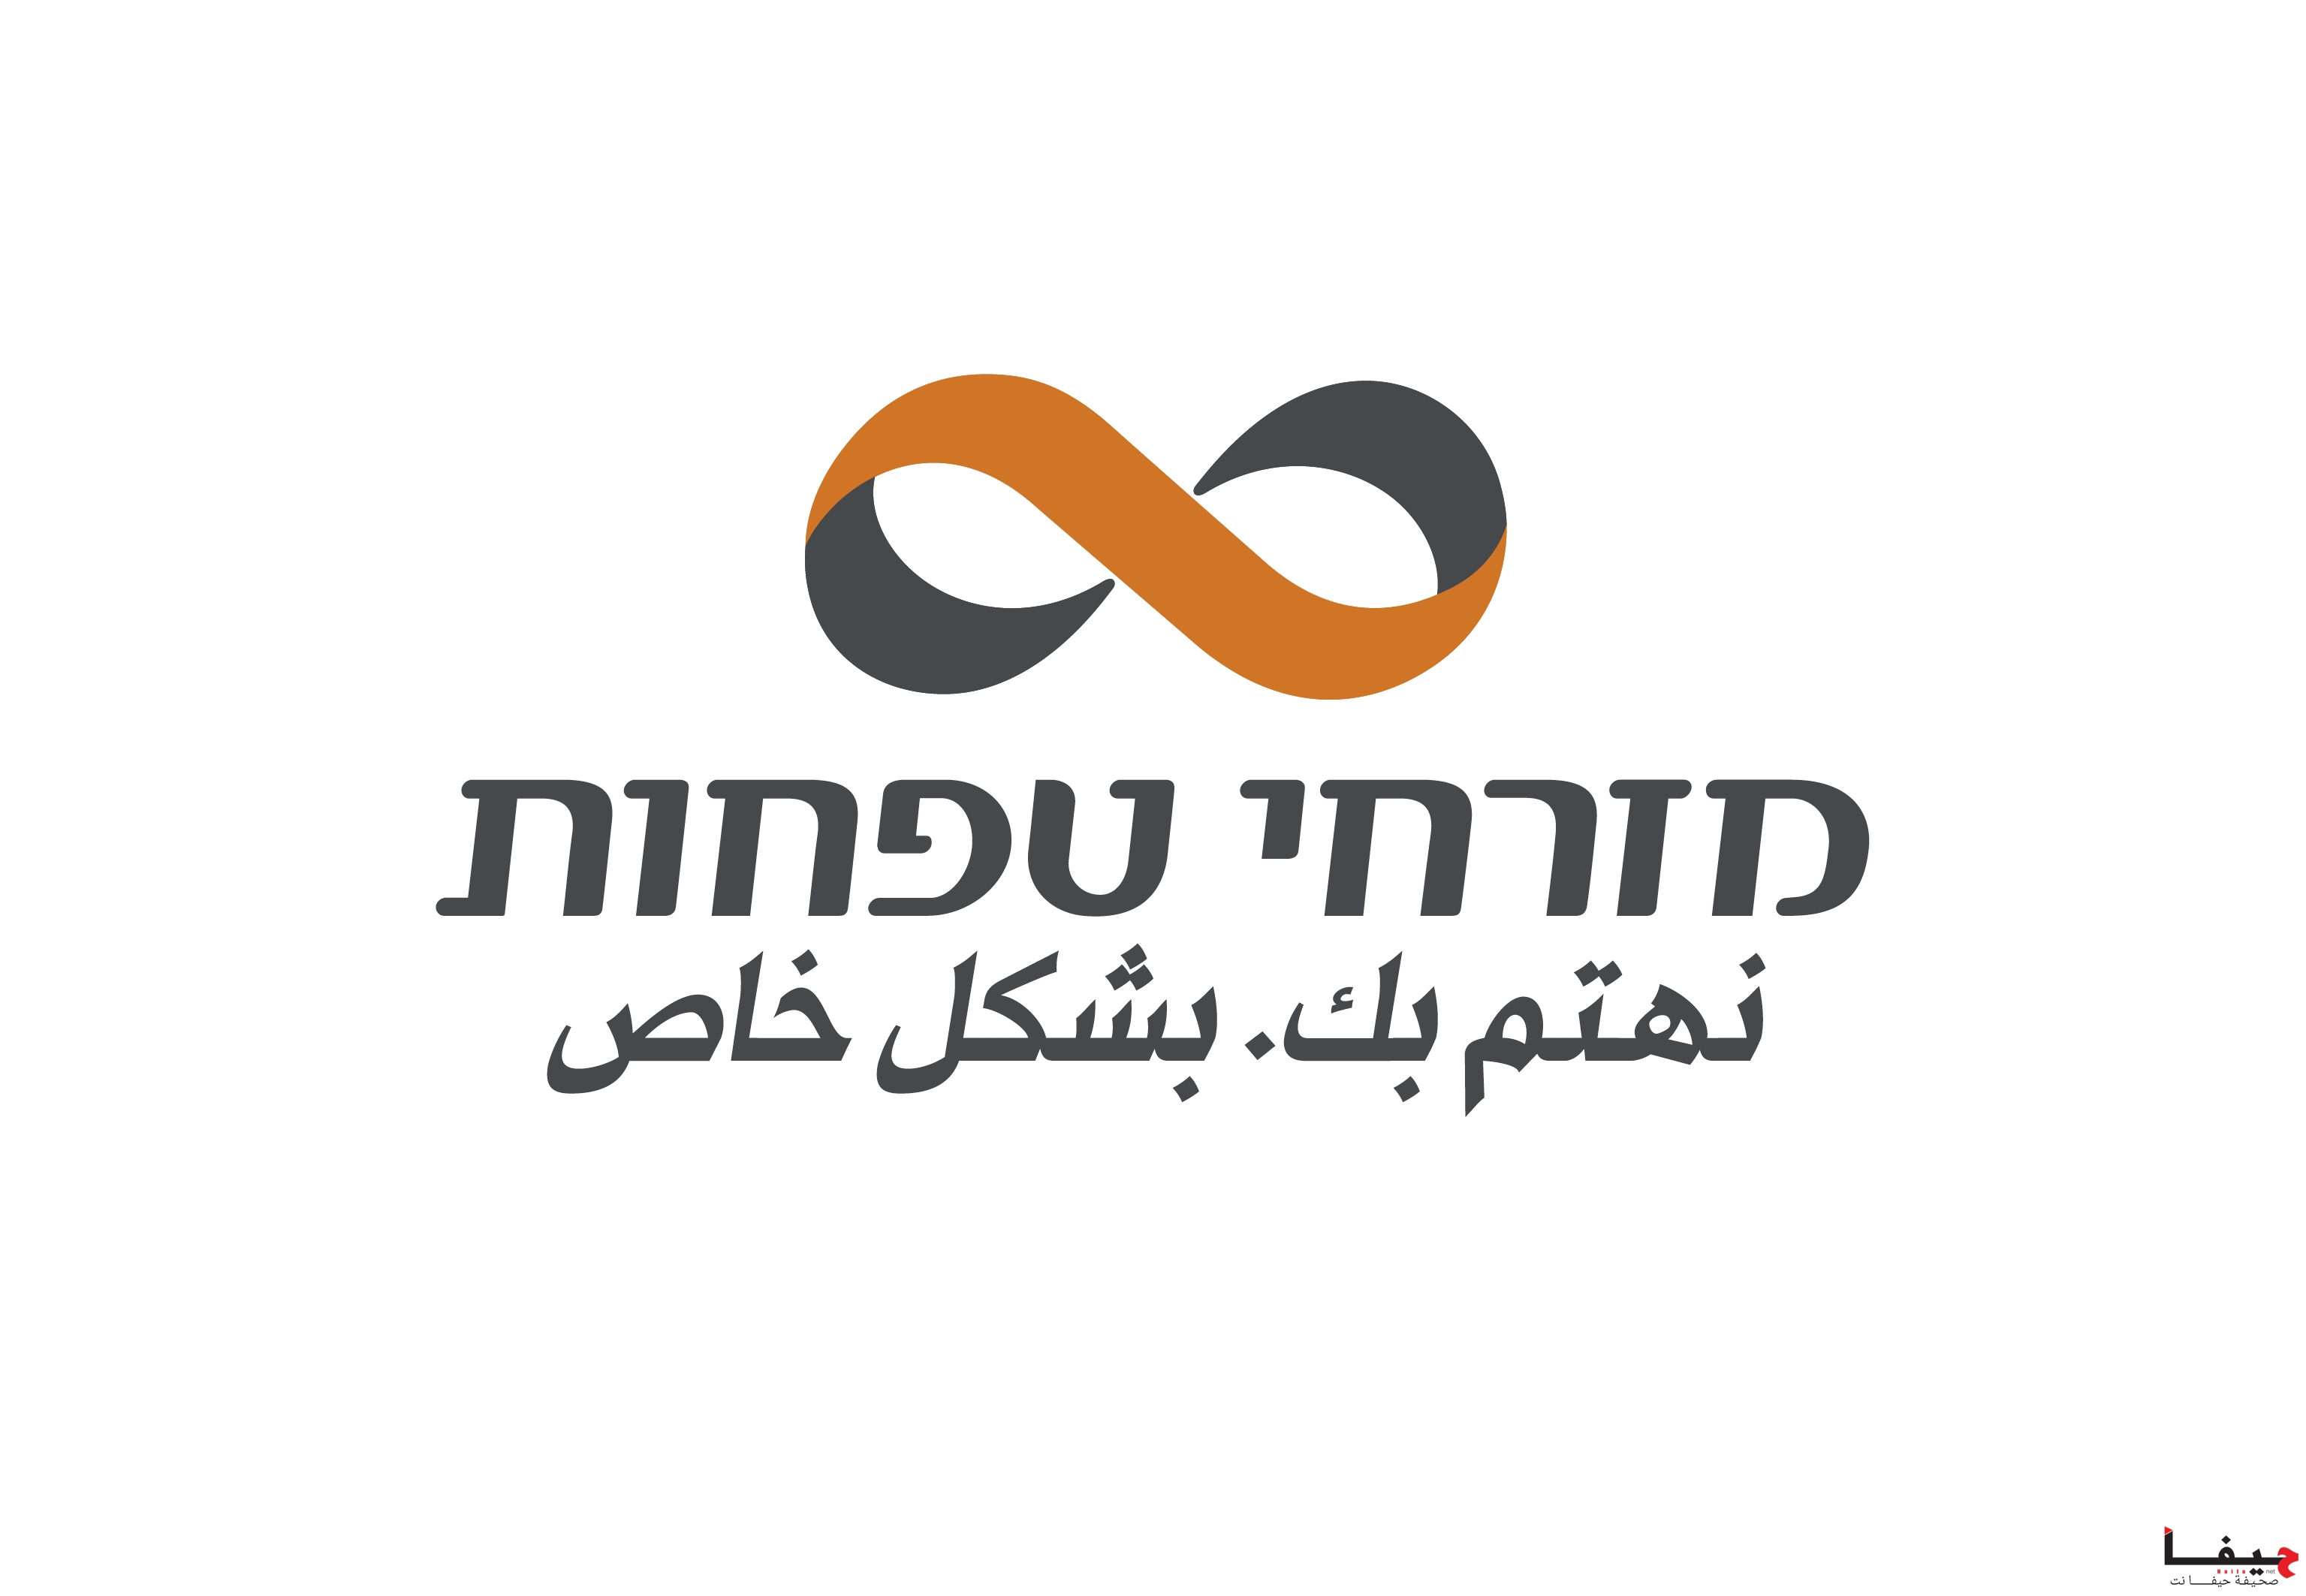 MZR_logo (6)